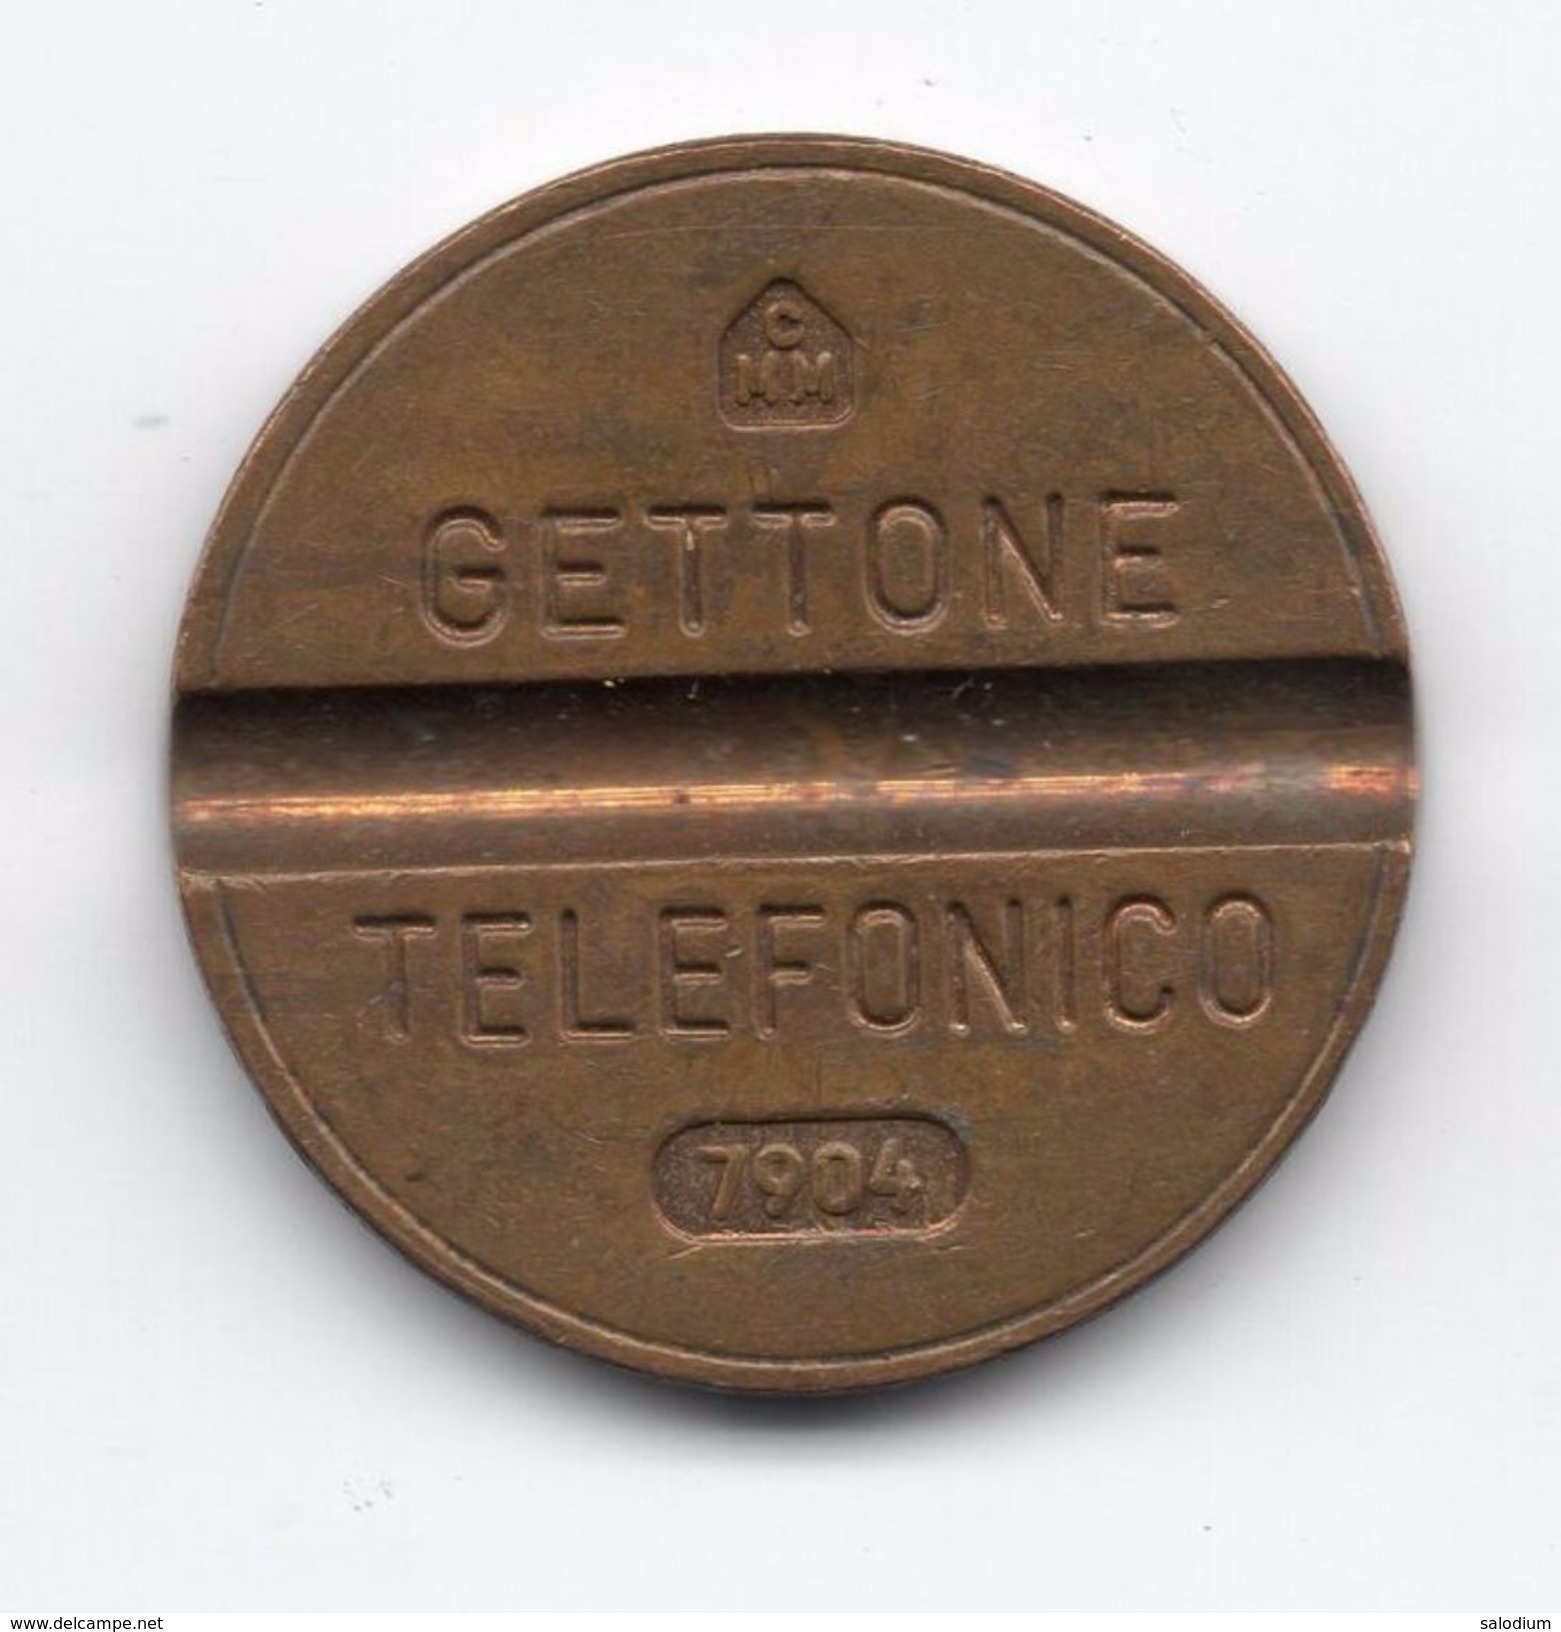 Gettone Telefonico 7904 Token Telephone - (Id-794) - Professionnels/De Société